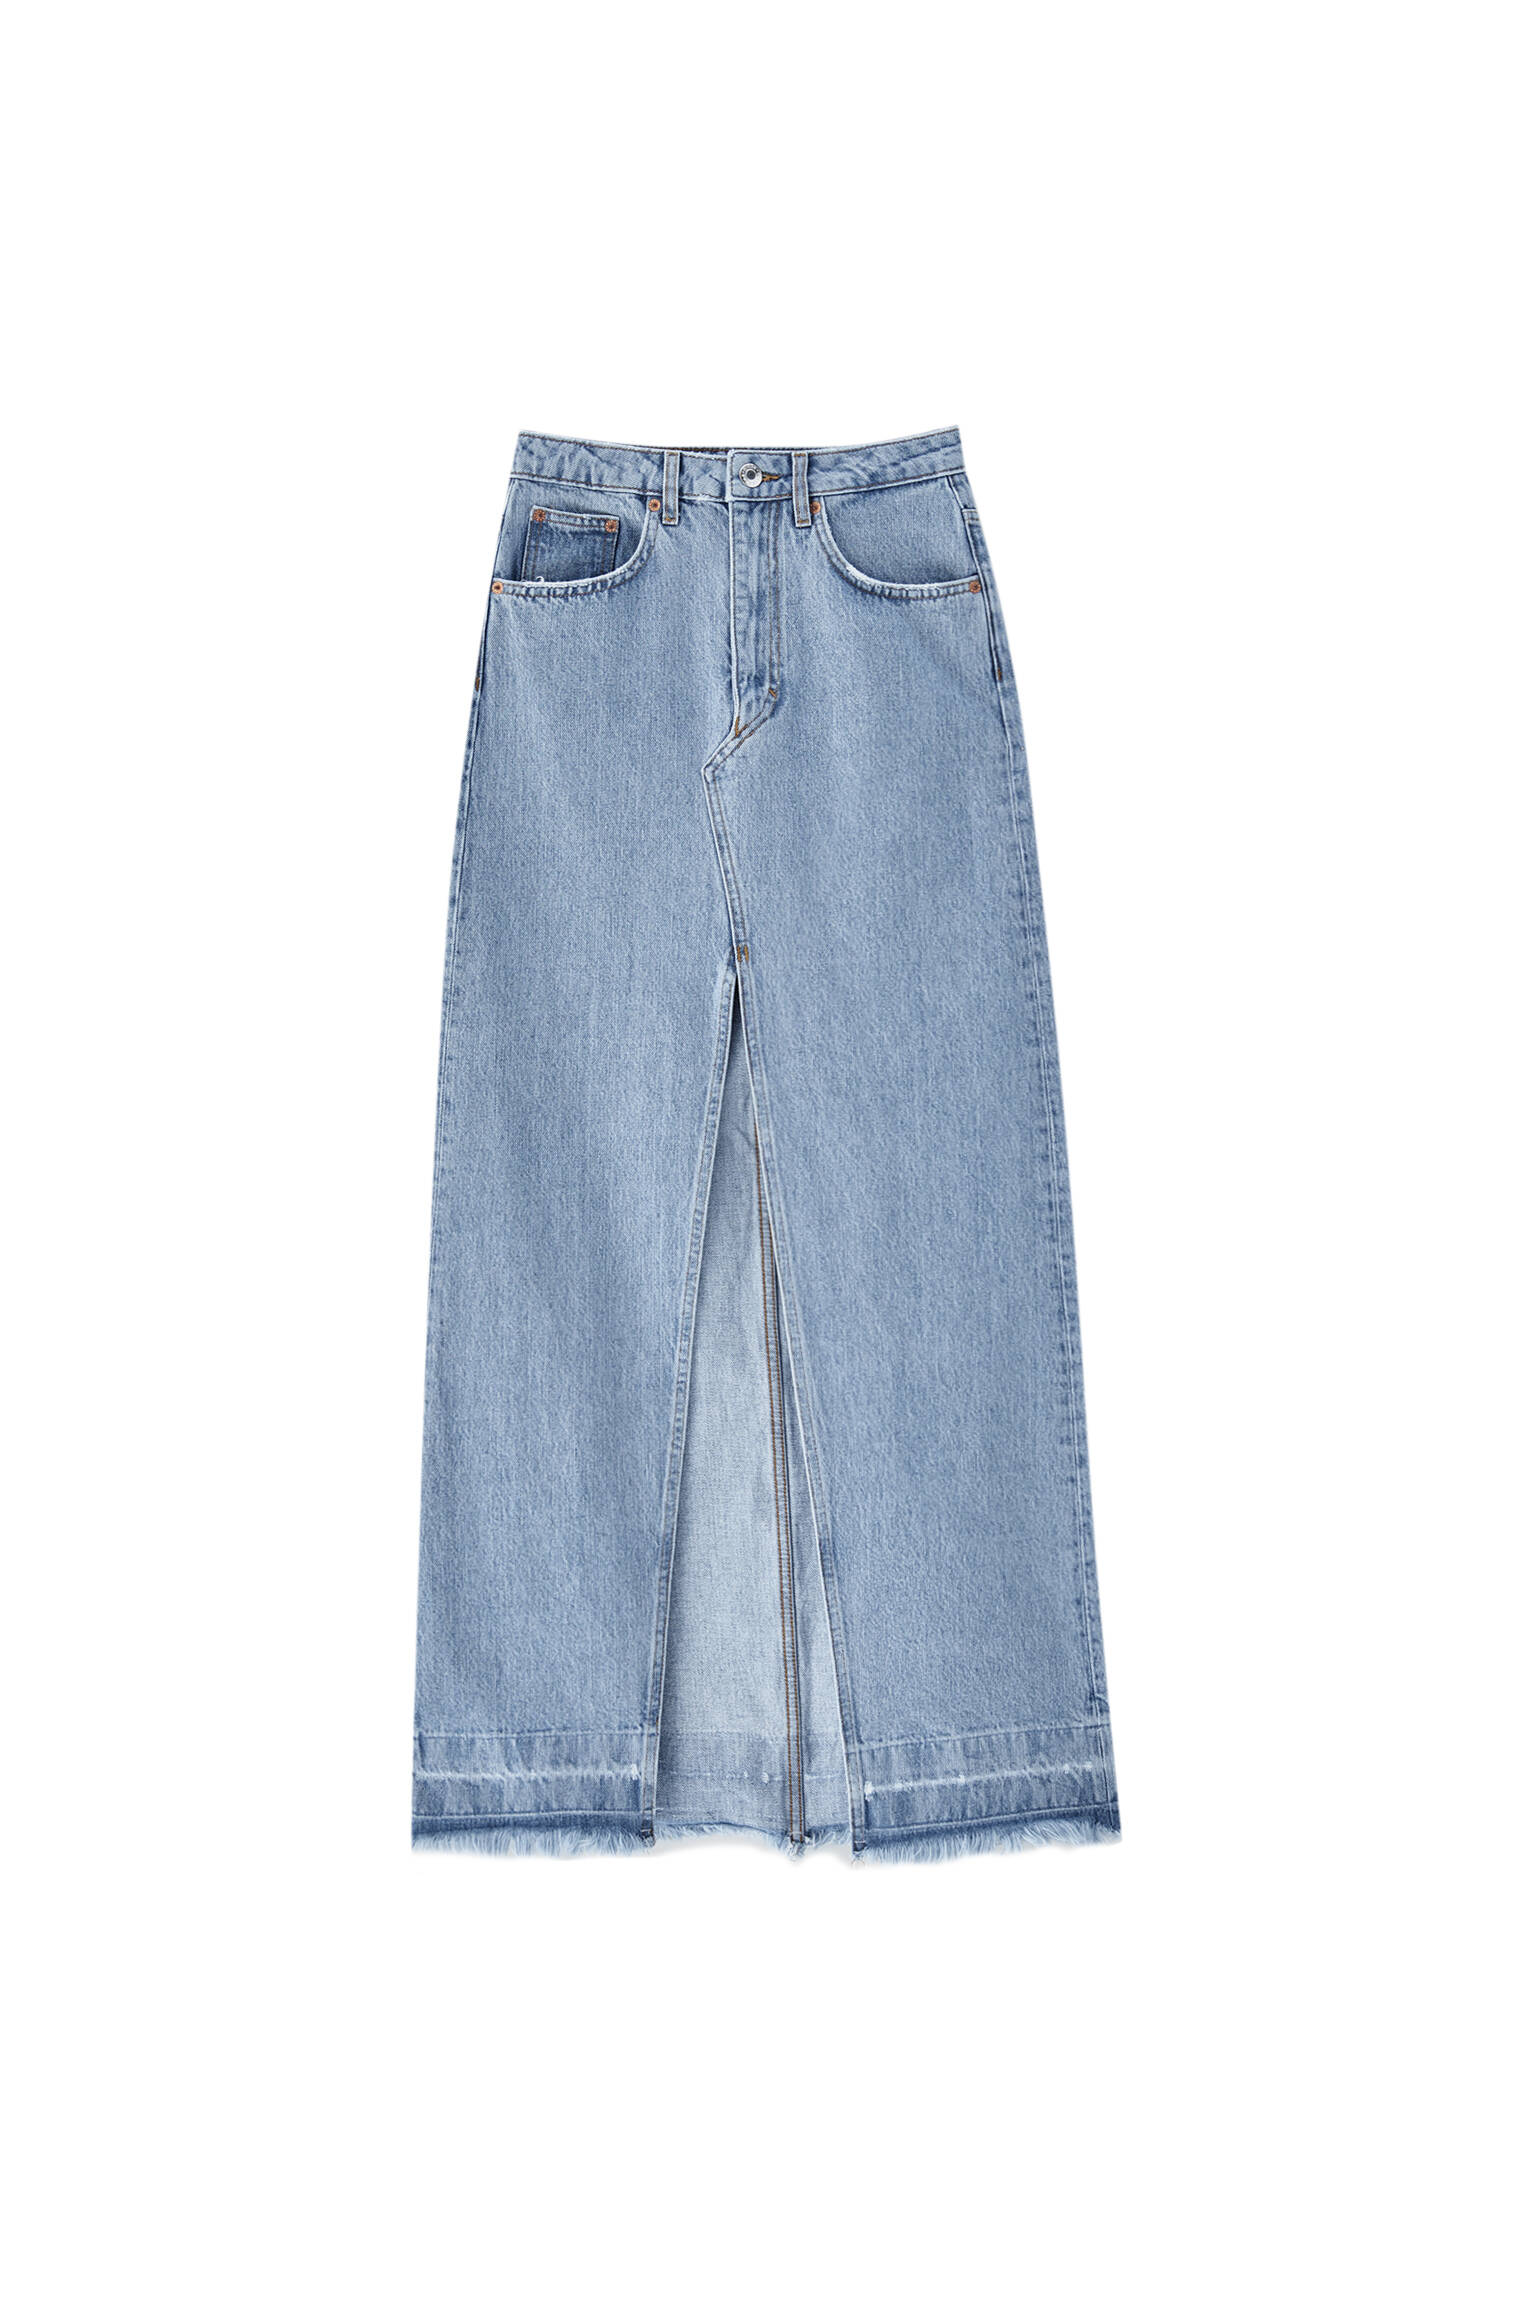 СИНИЙ Удлиненная джинсовая юбка с разрезом спереди Pull & Bear